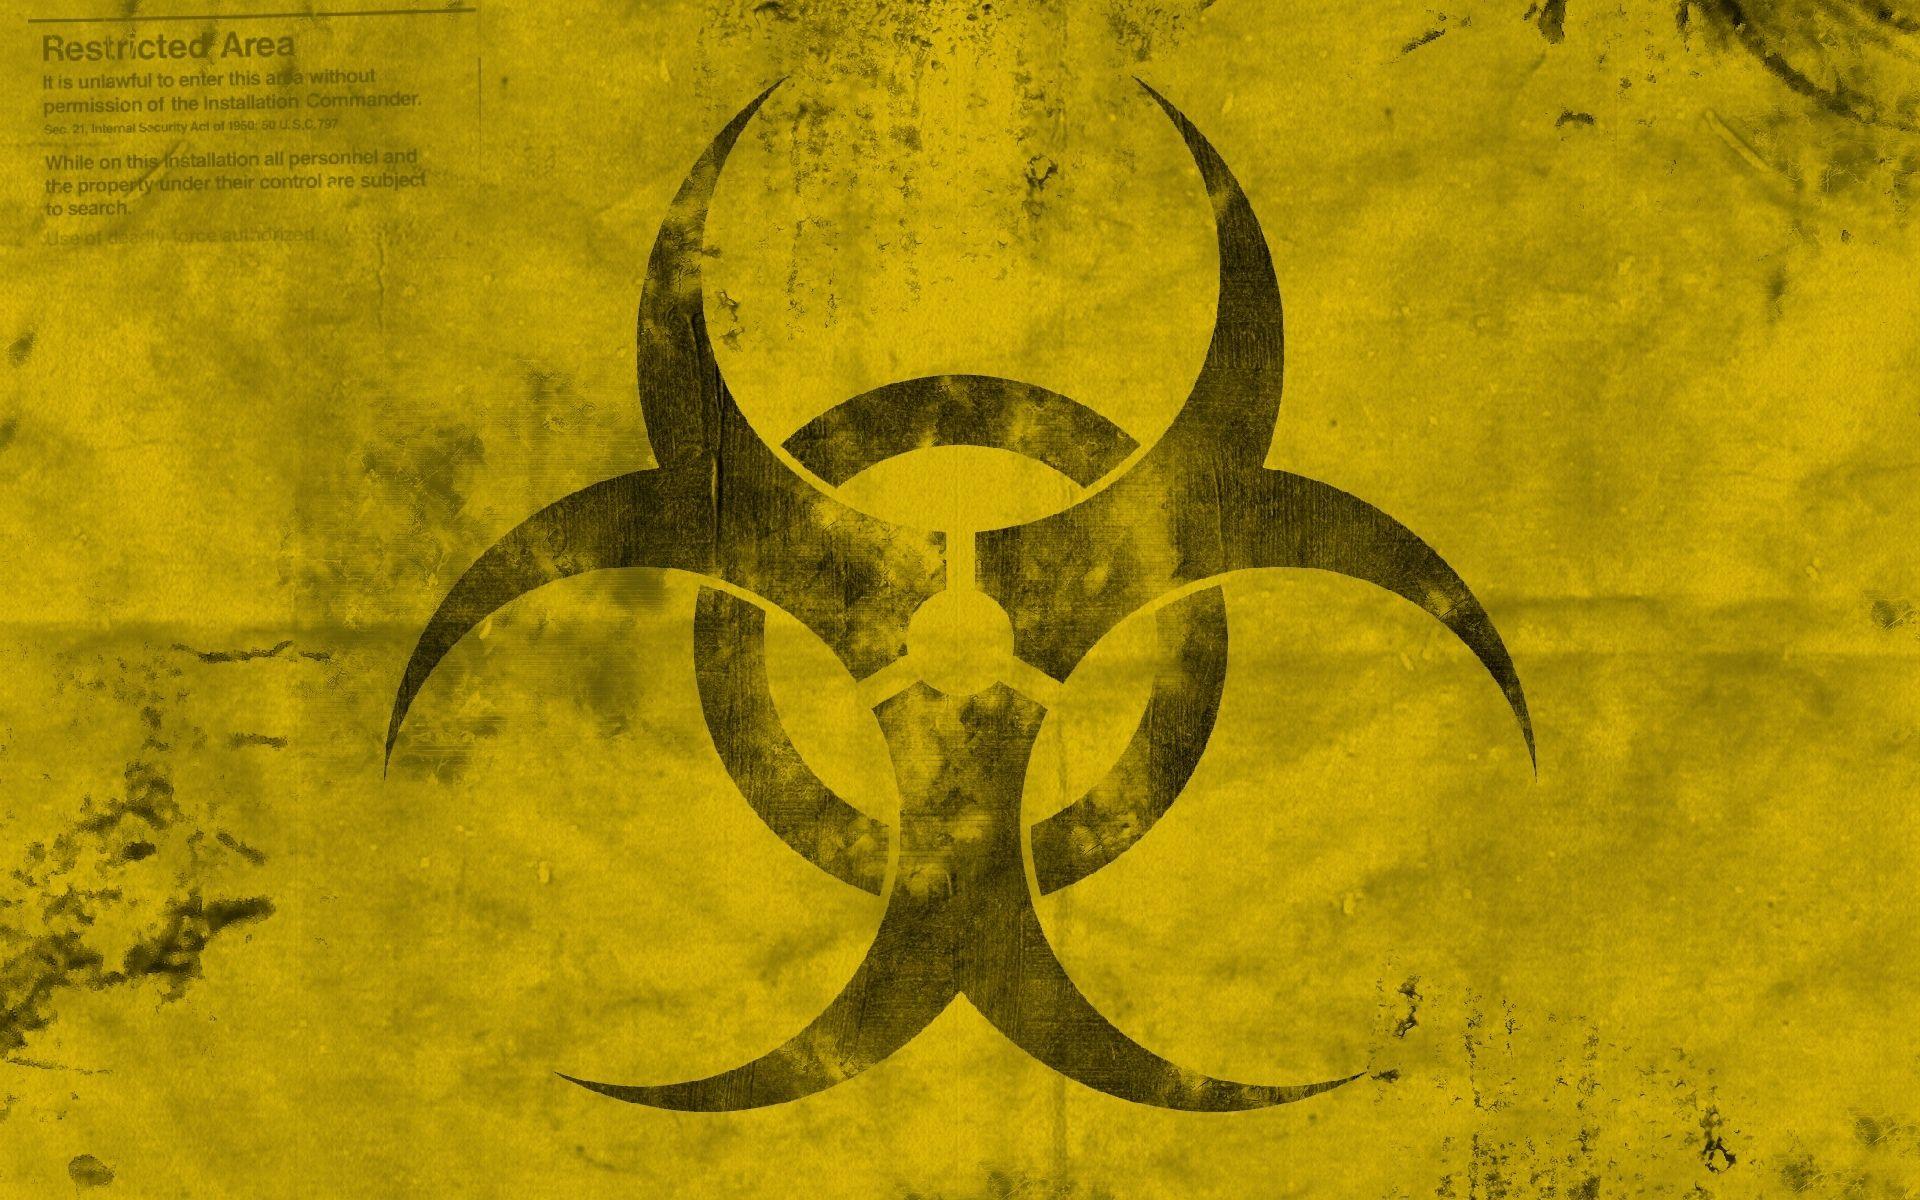 HD Quality Radioactive Image, Radioactive Wallpaper HD Base